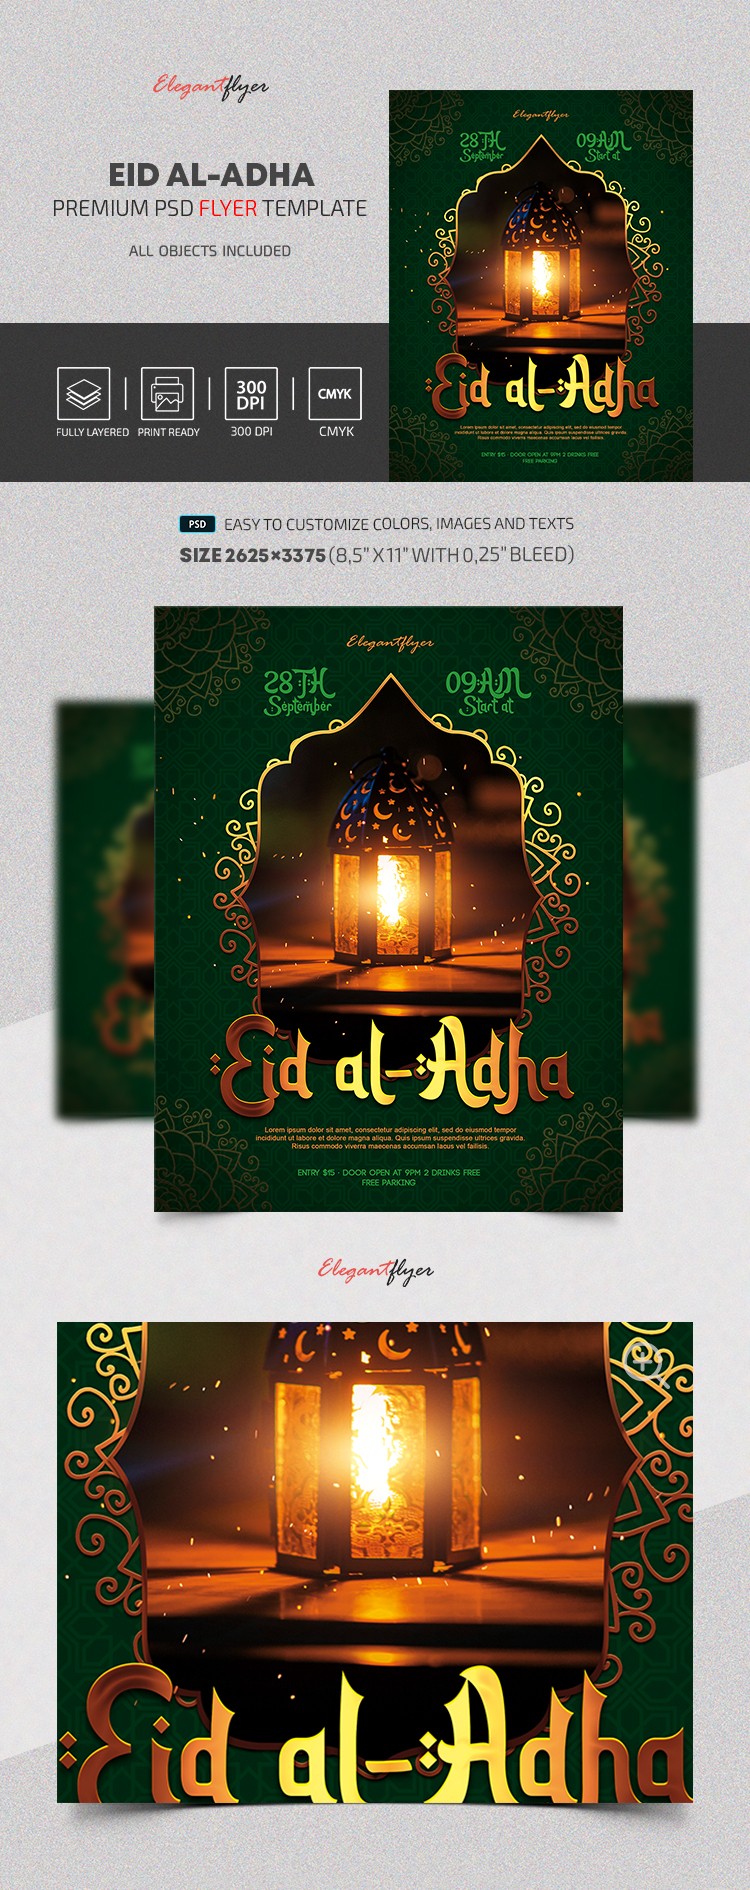 Eid Al-Adha Flyer by ElegantFlyer